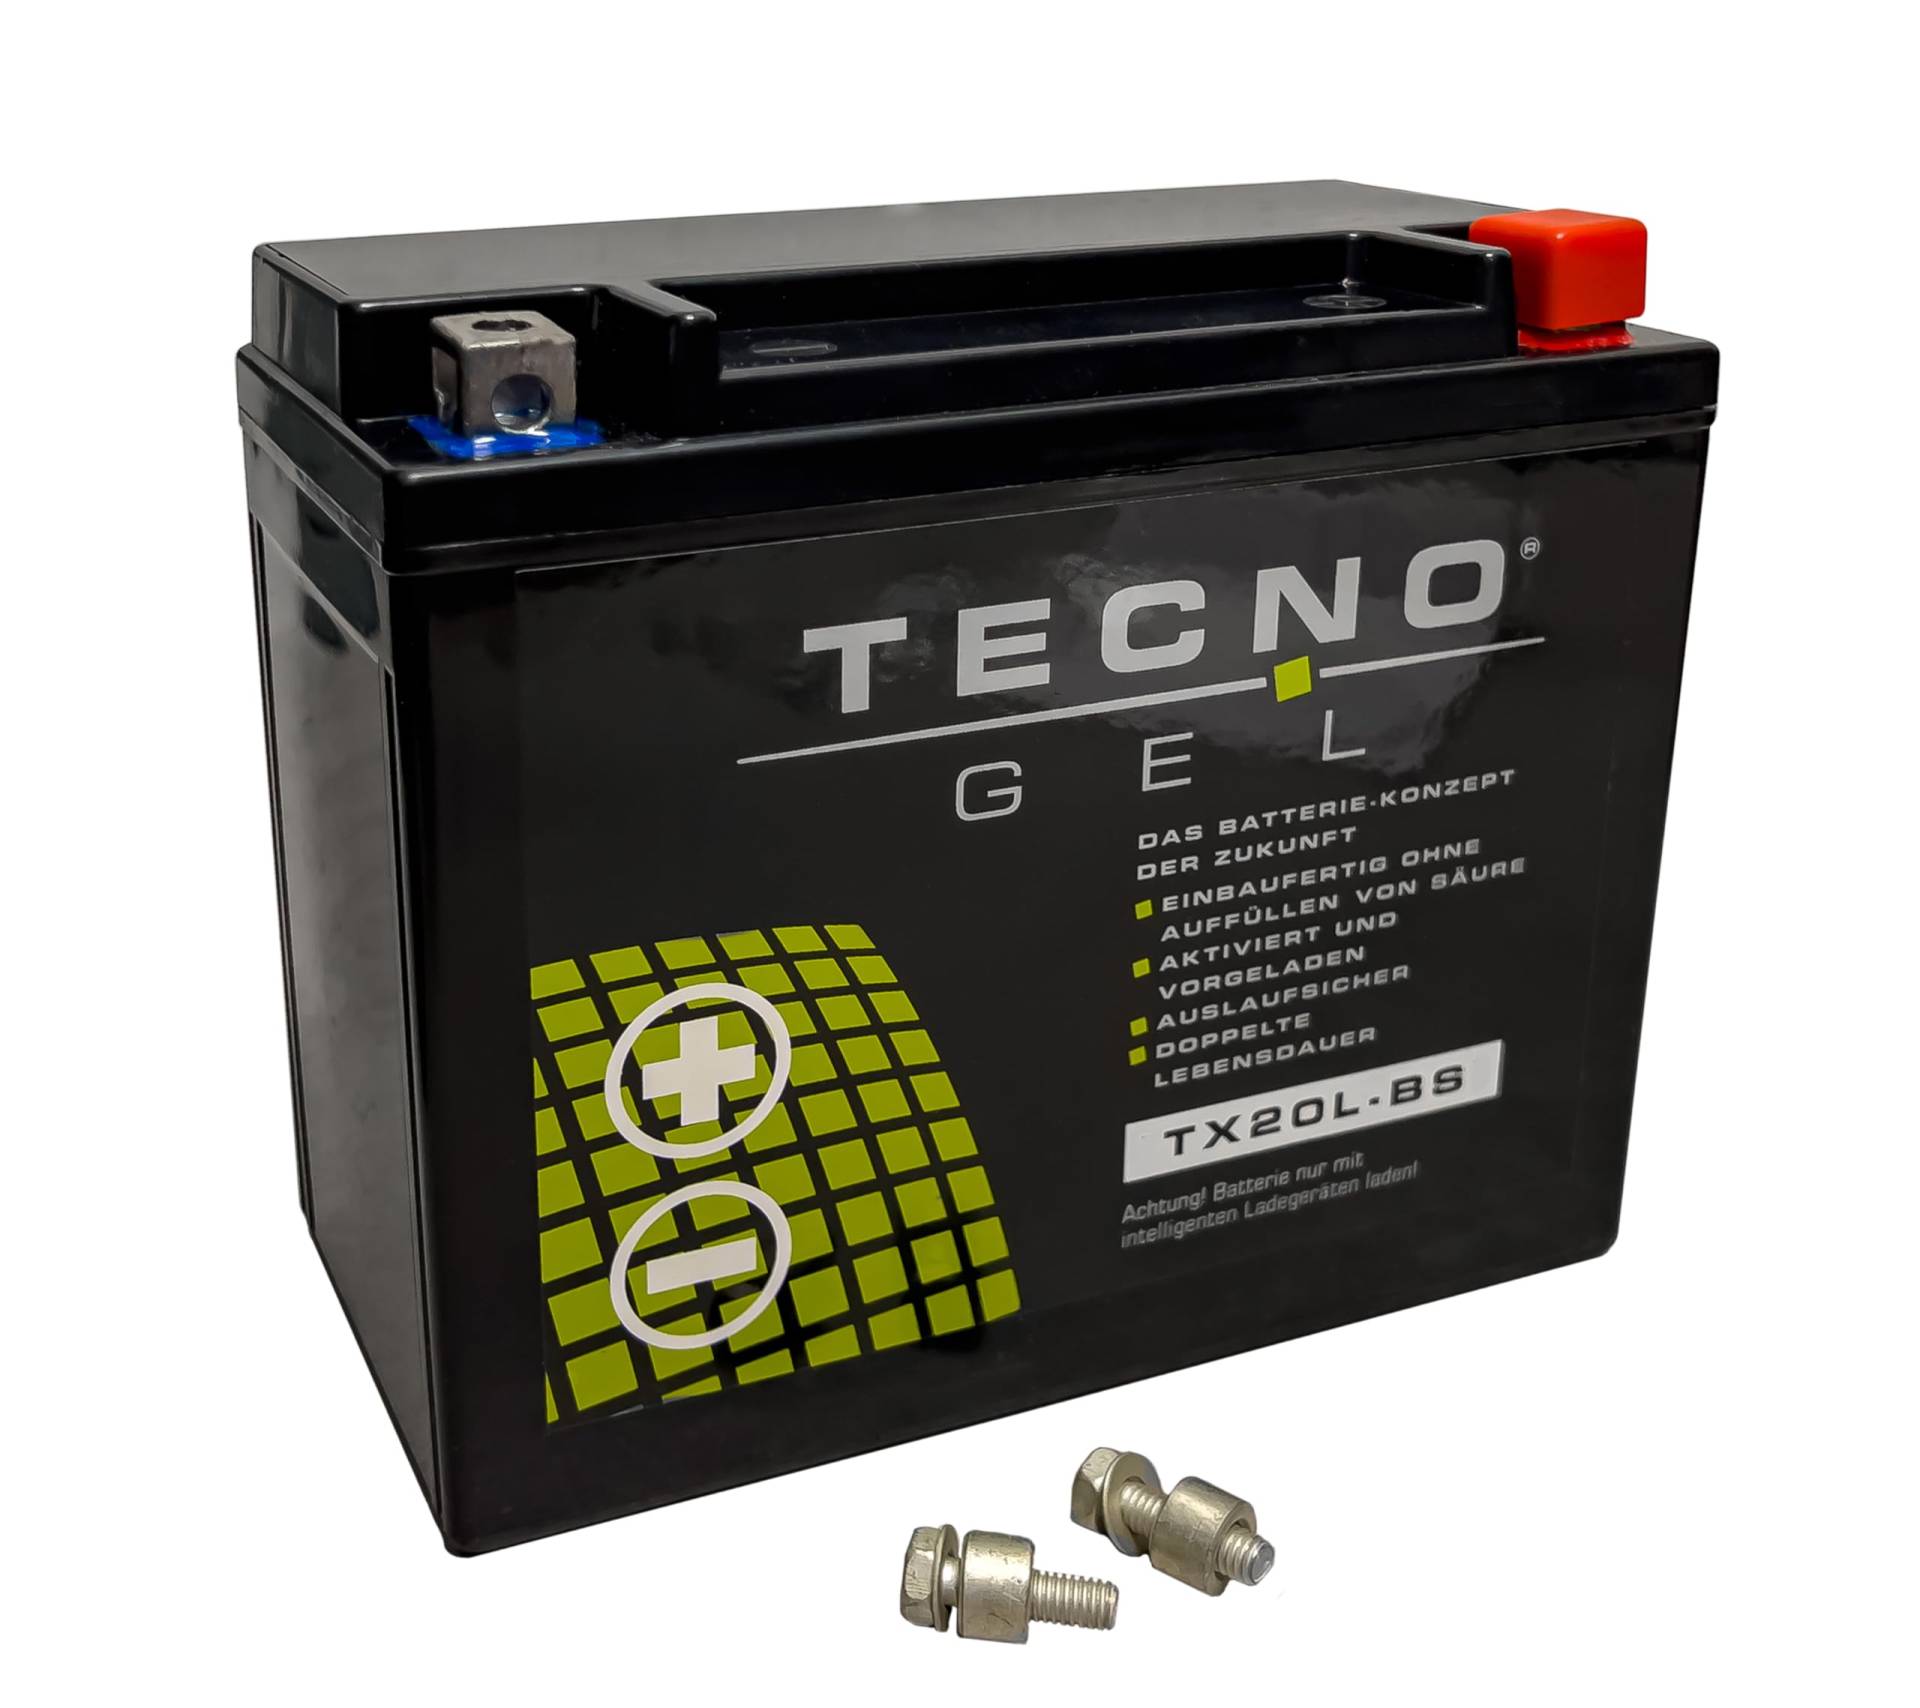 TECNO-GEL Motorrad-Batterie für YTX20L-BS für HARLEY DAVIDSON FLSTC 1340/1450/1584/1690 Heritage Softail 1991-2017, 12V Gel-Batterie 20Ah (DIN 82000), 175x87x155 mm von Wirth-Federn